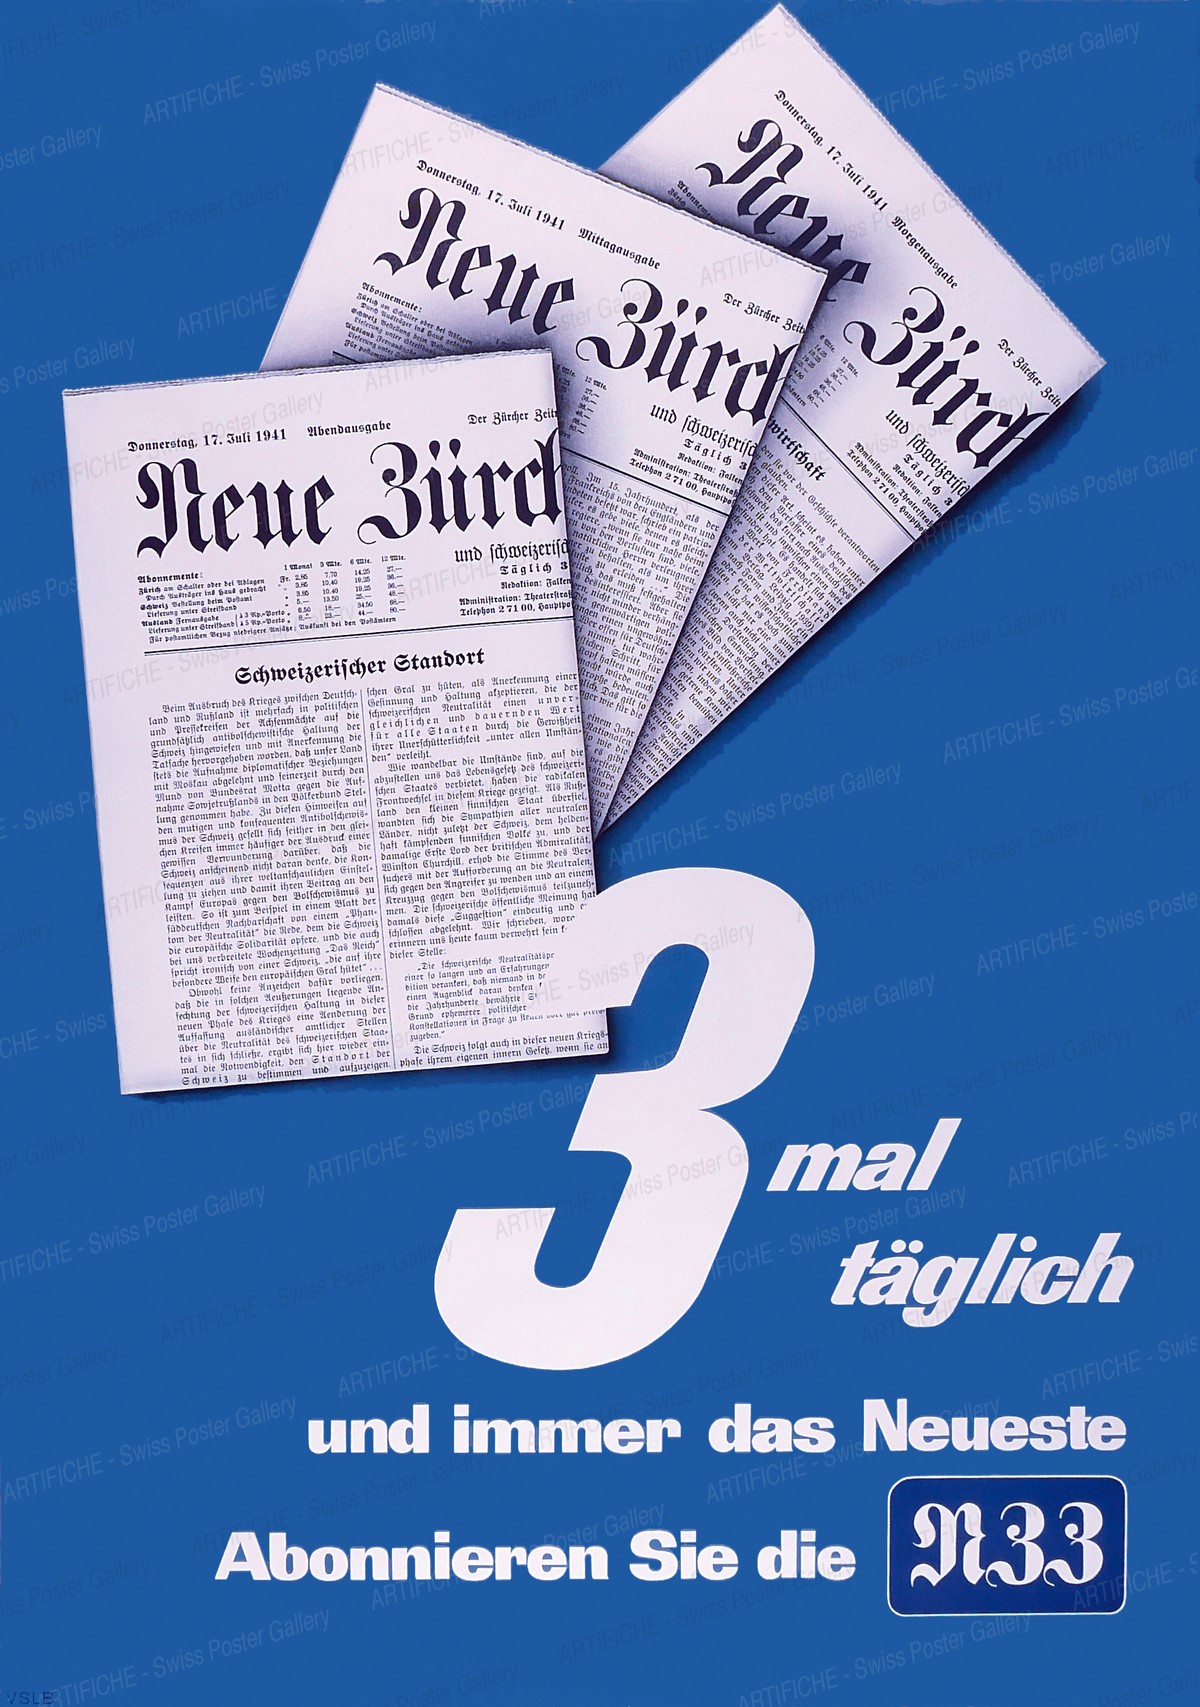 NZZ – The new Zurich Times, Artist unknown